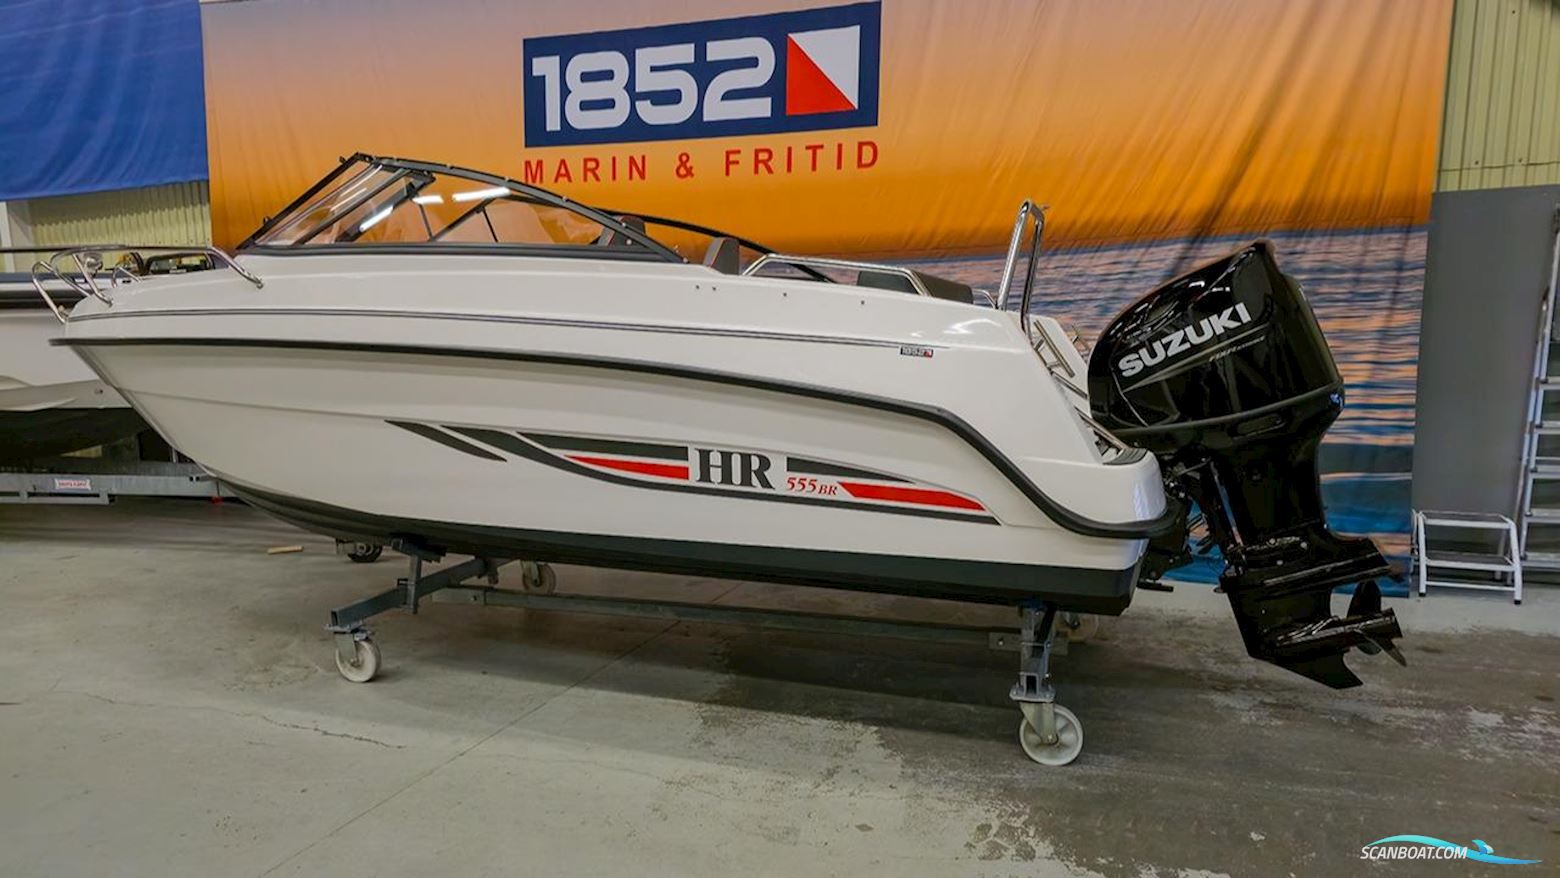 Hr 555 BR Motorboot 2022, mit Suzuki motor, Sweden